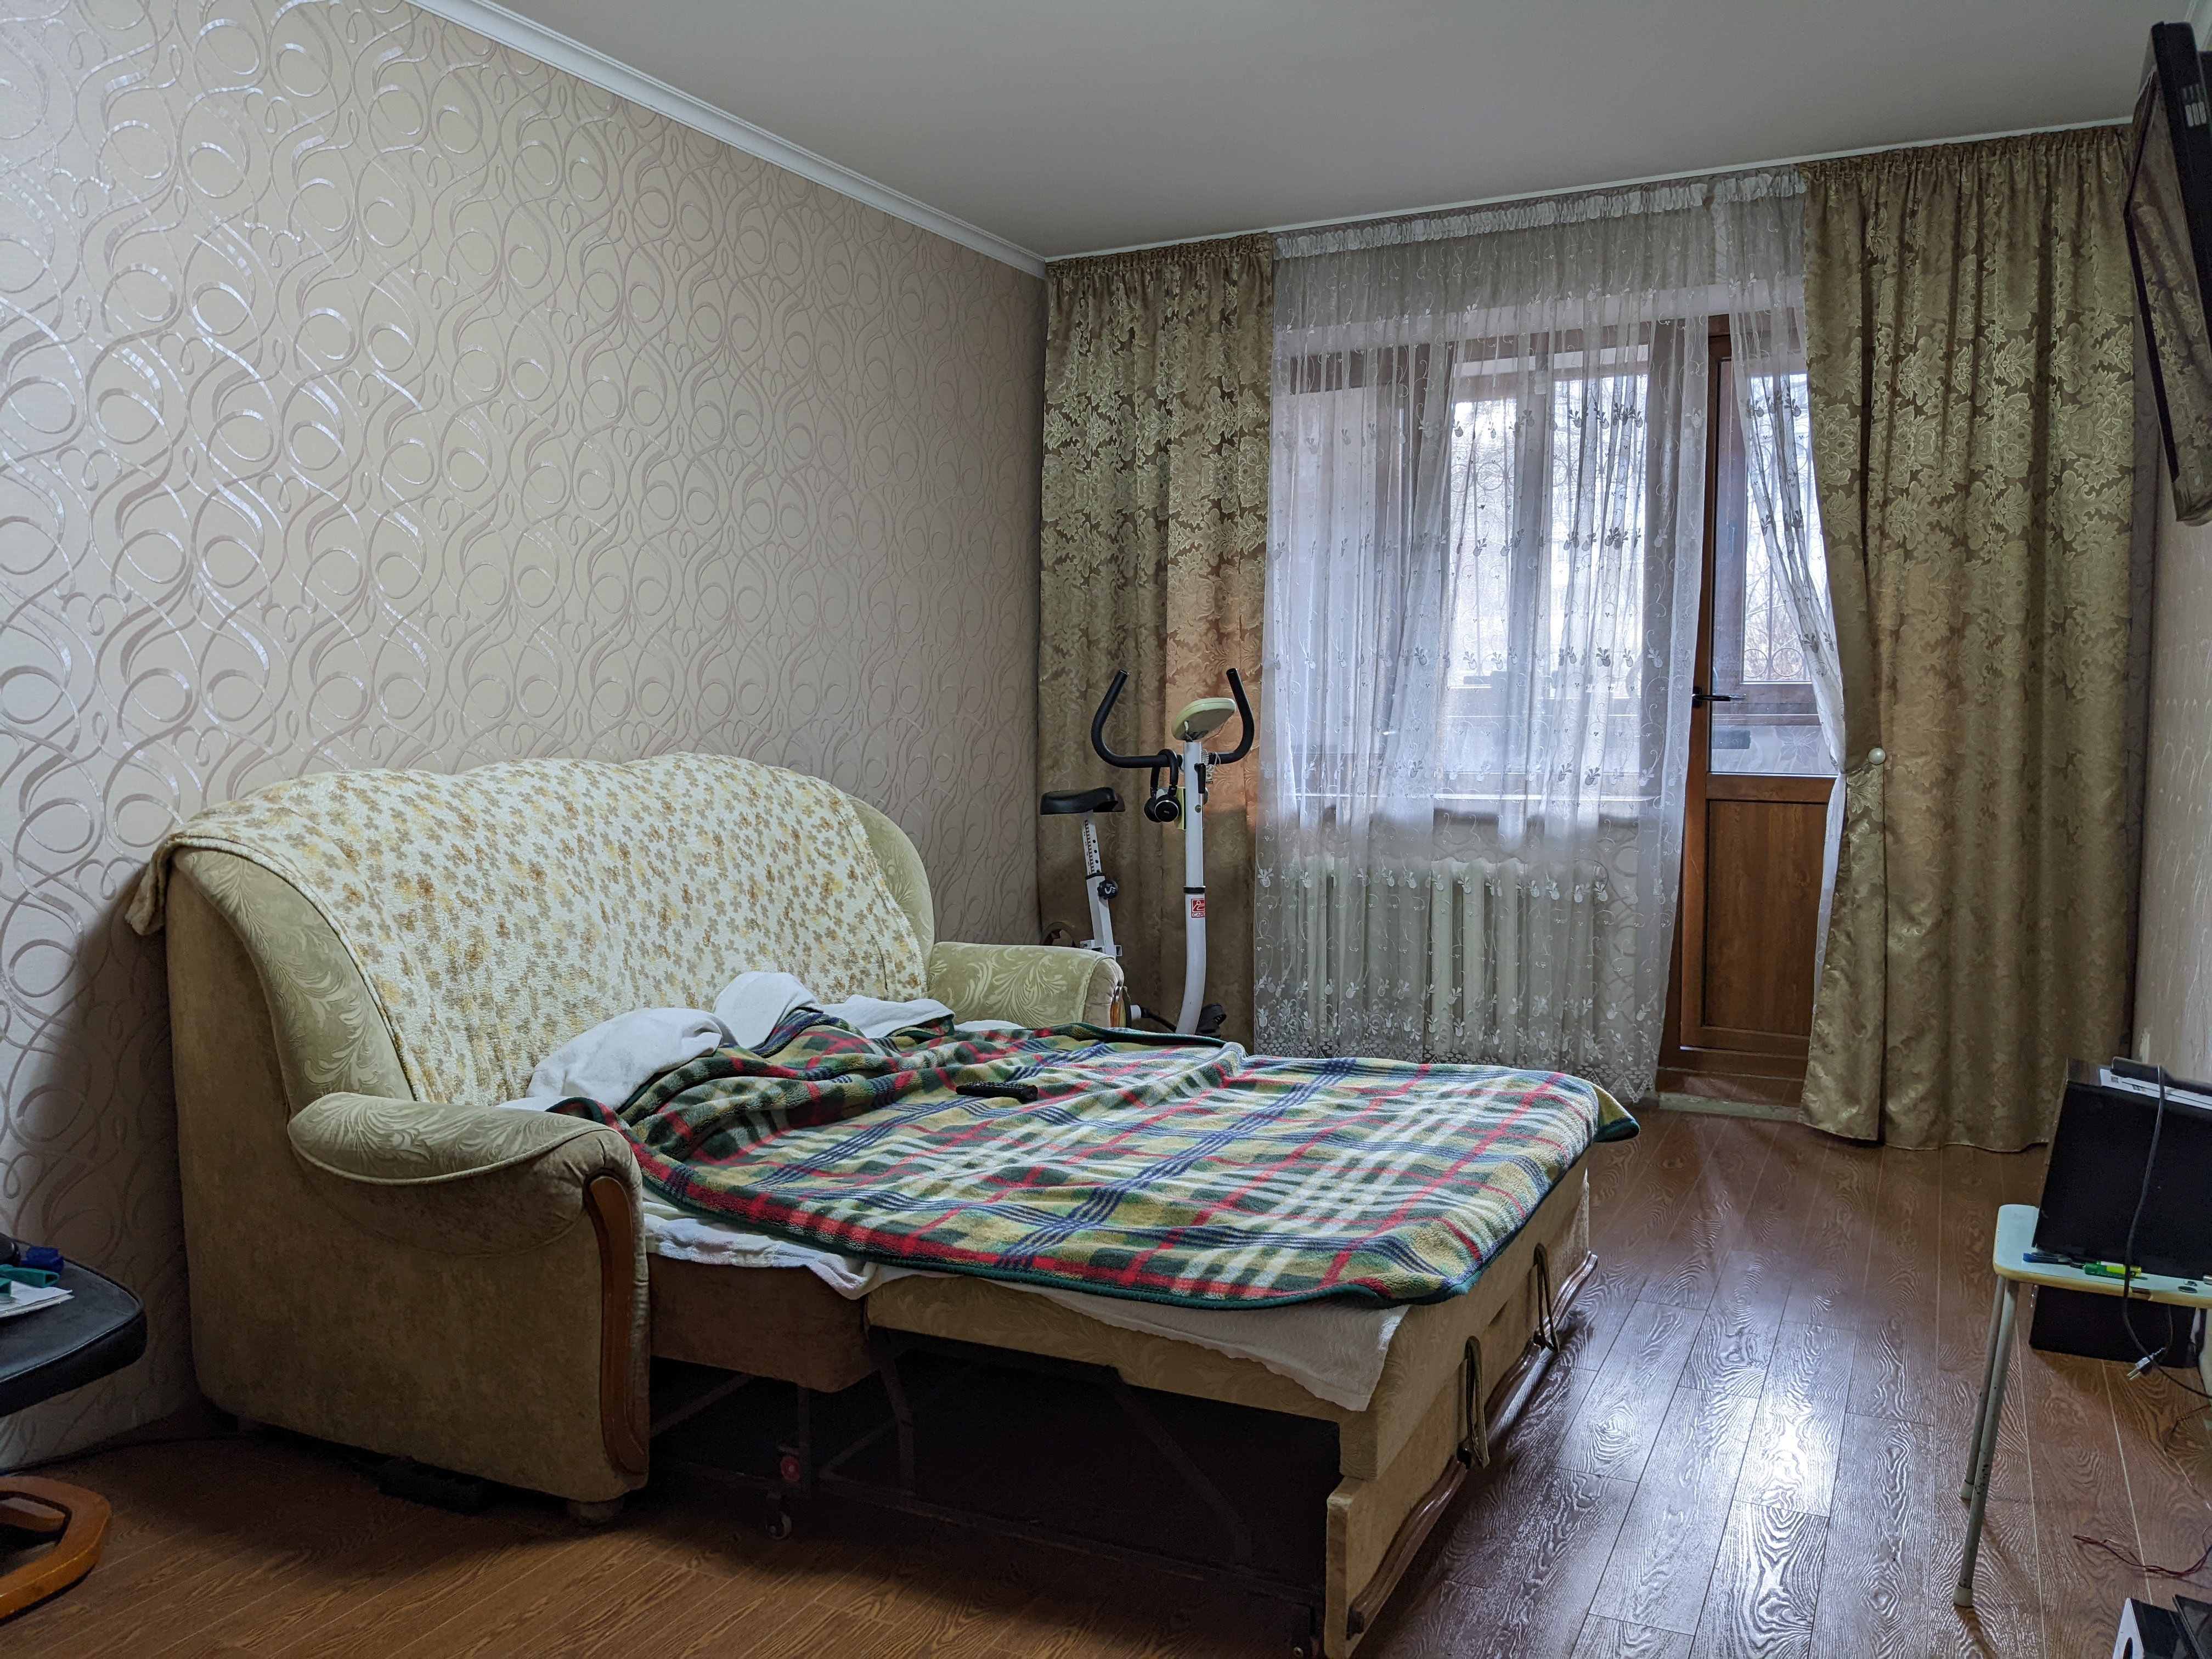 VÂNDUT Apartament de vânzare, Chișinău, sec. Botanica, 2 odăi cu 2 balcoane și subsol, 56 m2, et.1